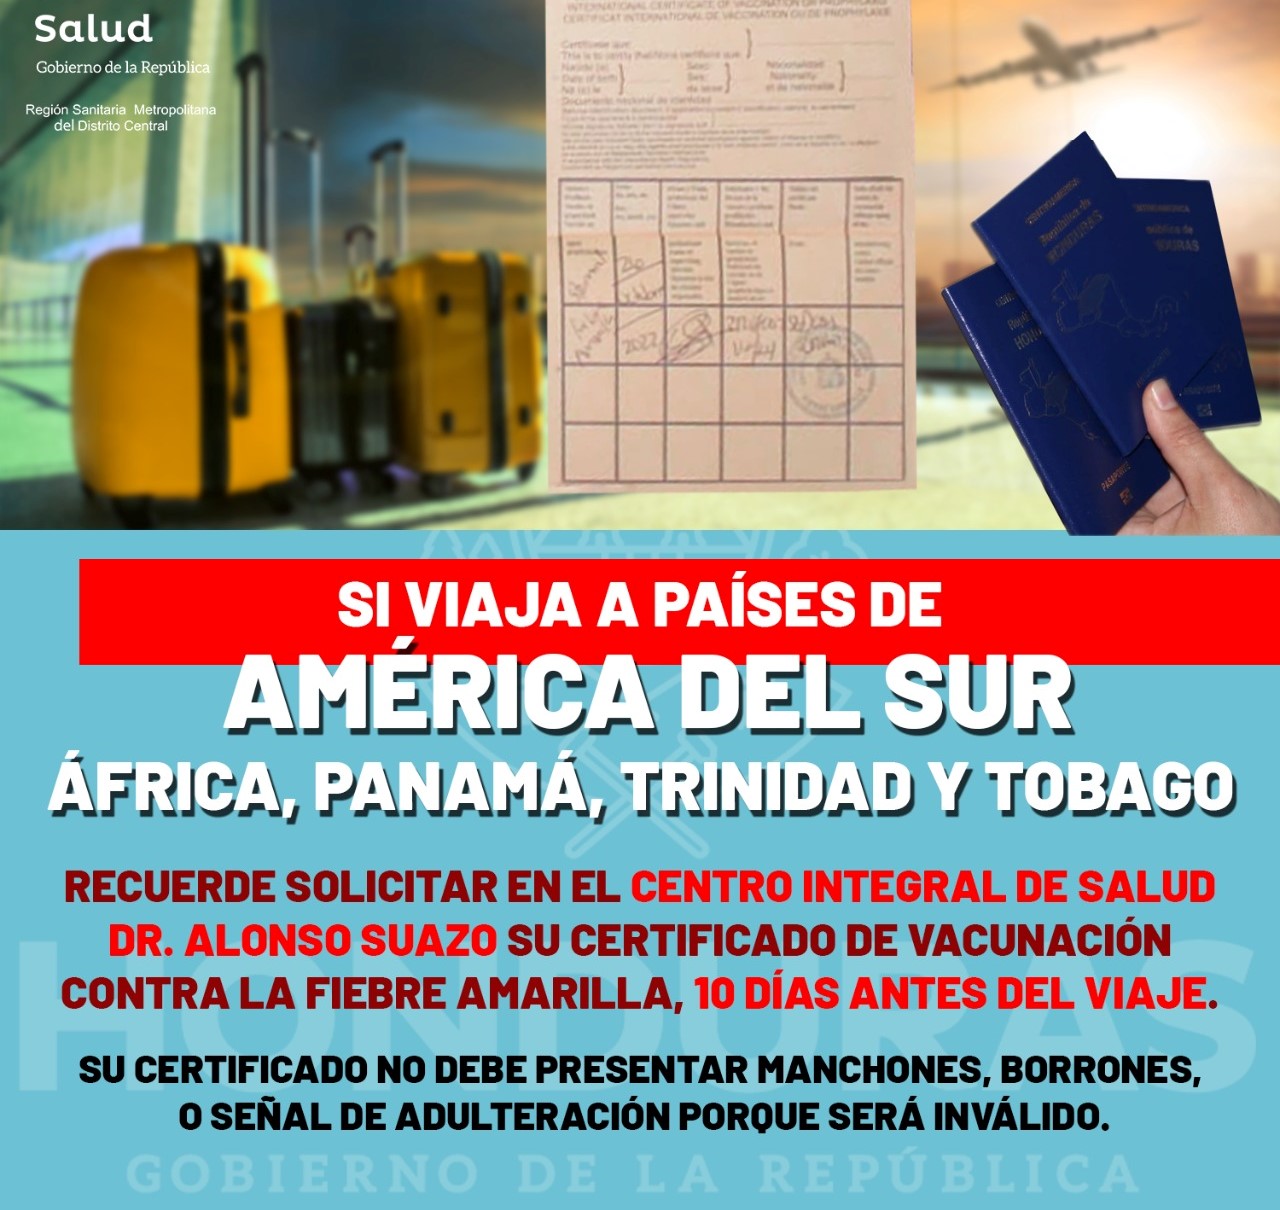 Todos los ciudadanos hondureños y extranjeros residentes en el país que viajan a los países en riesgo deben vacunarse contra la Fiebre Amarilla